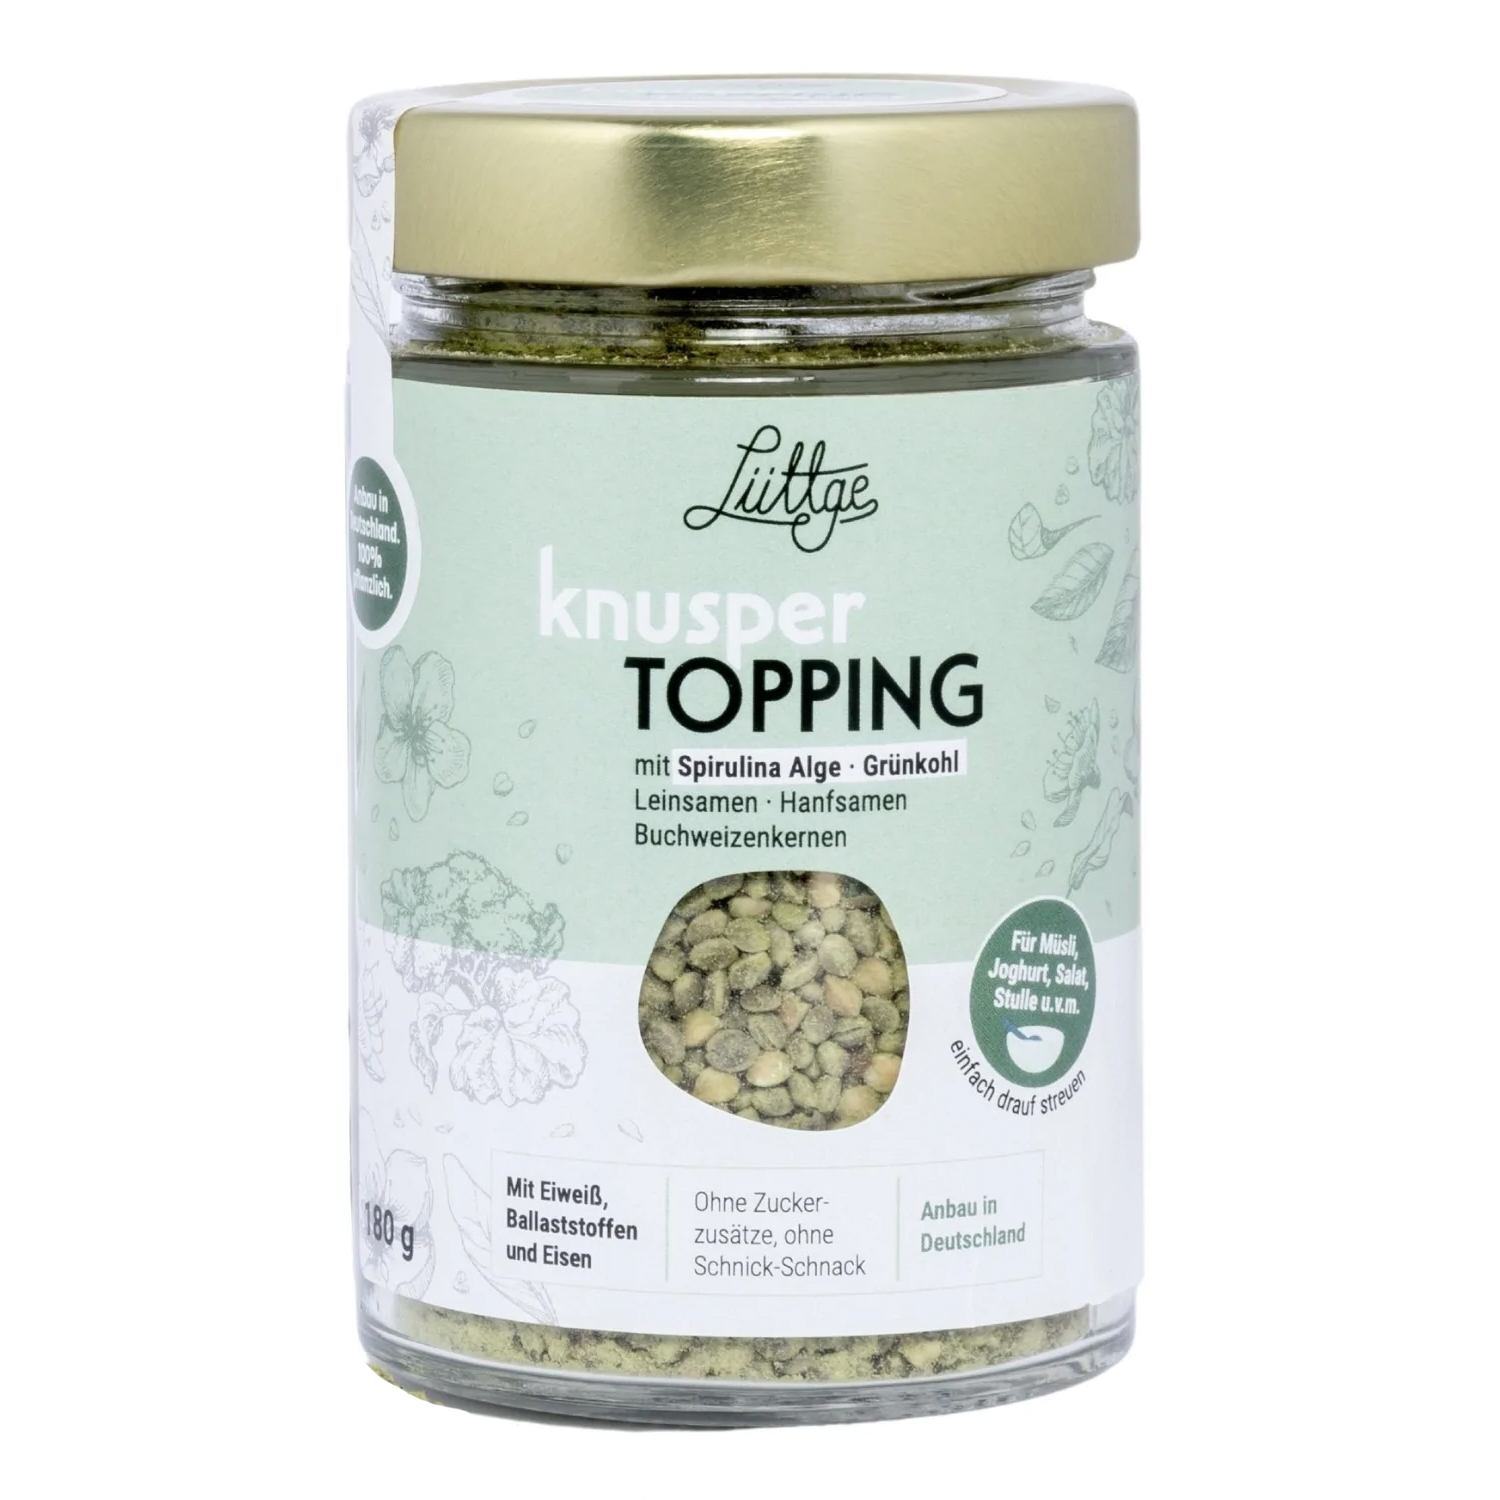 Lüttge Knusper Topping mit Spirulina Alge und Grünkohl von Evergreen Foods - 180g